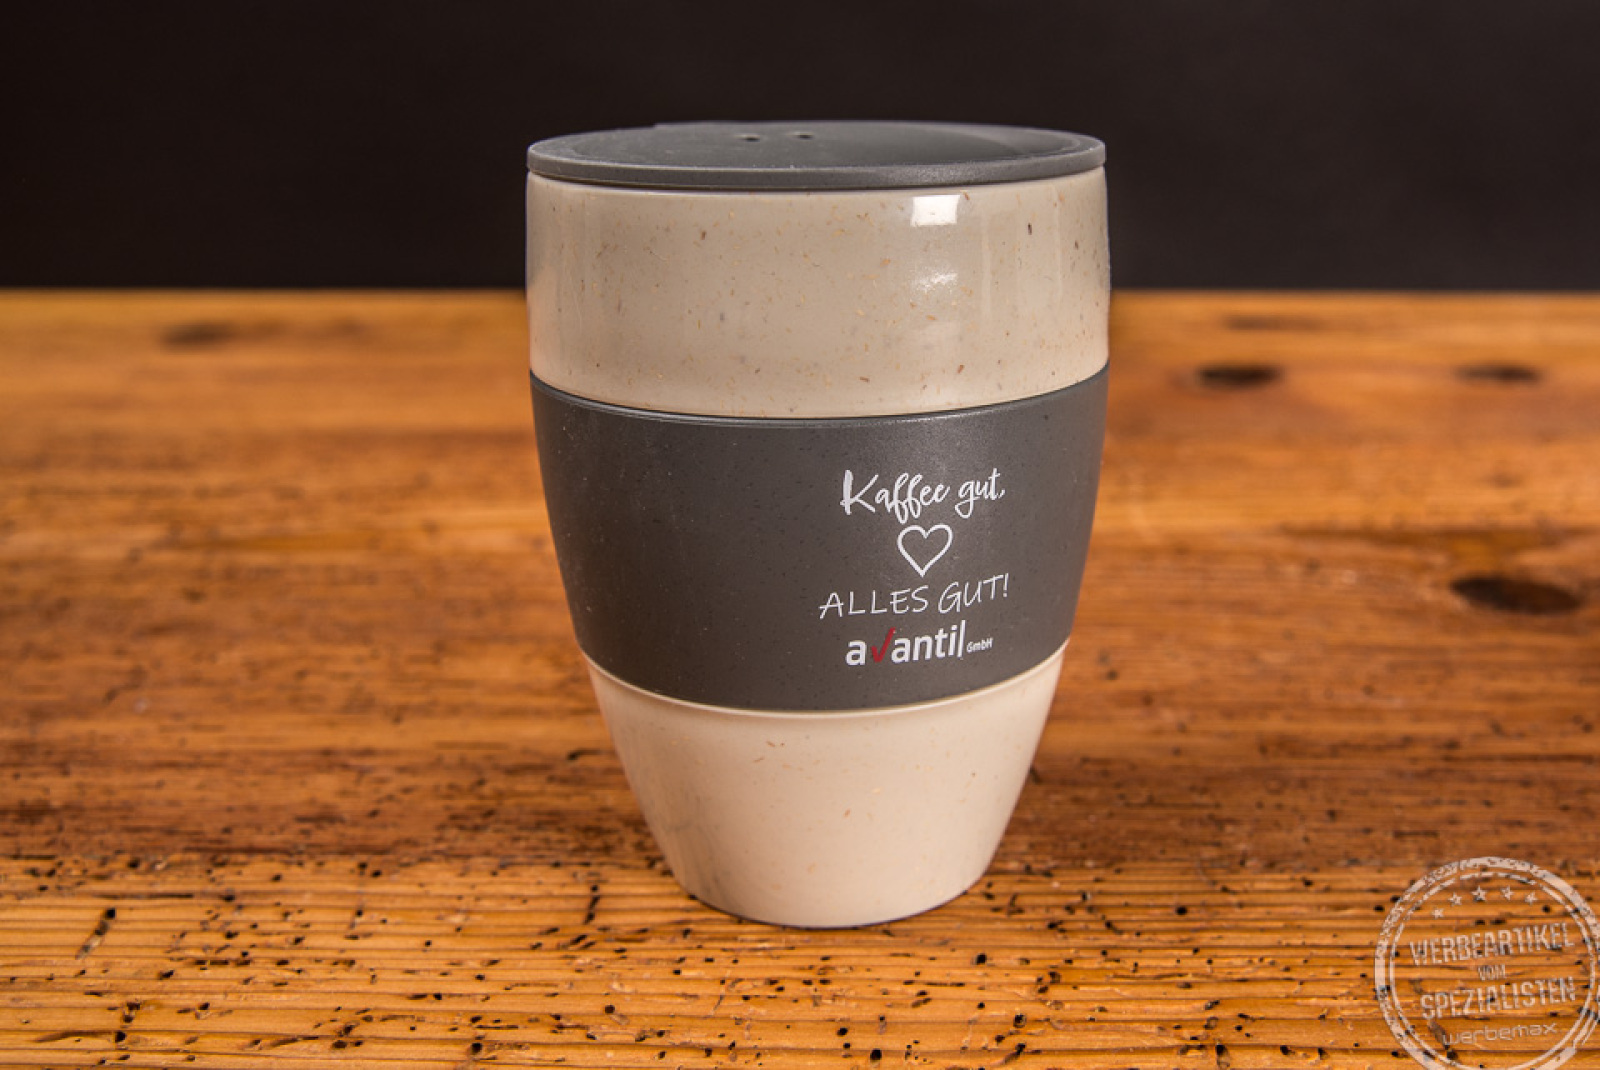 Thermos Kaffeebecher Aroma to go mit grauem Deckel und schwarzer Manschette als Werbeartikel.